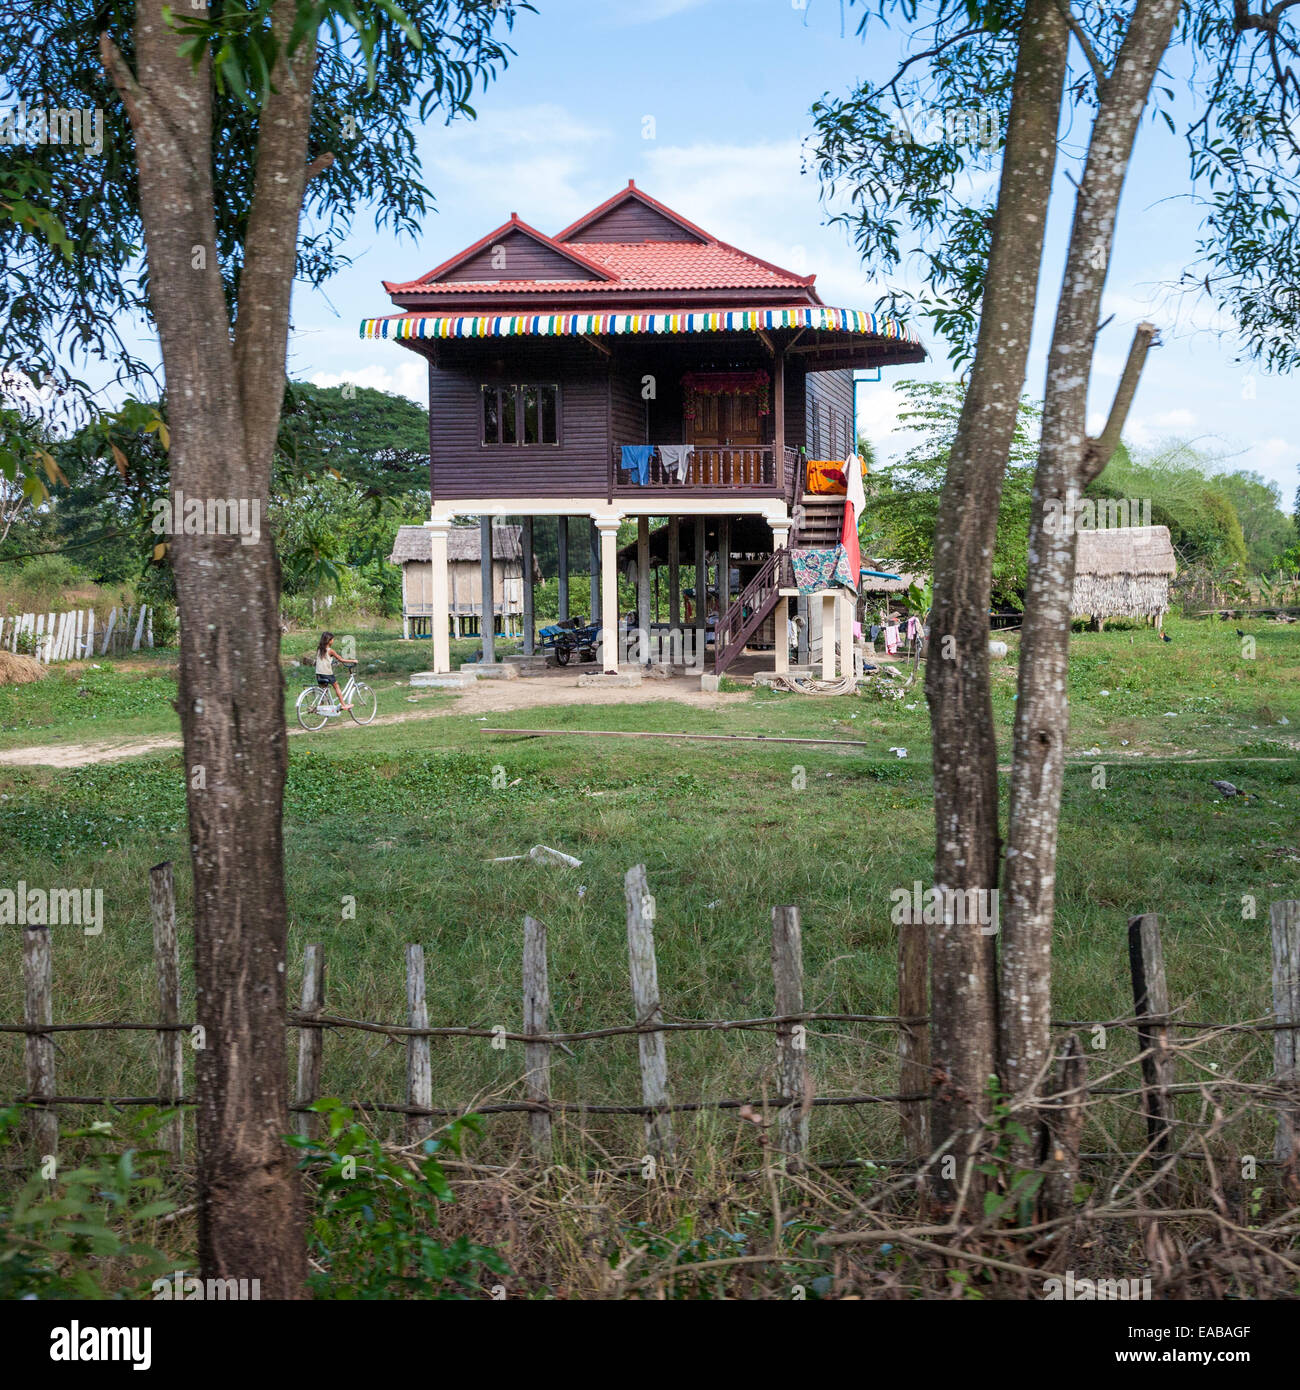 Le Cambodge. Maison Rurale moderne typique, avec un logement au-dessus de la zone de stockage au niveau du sol. Banque D'Images